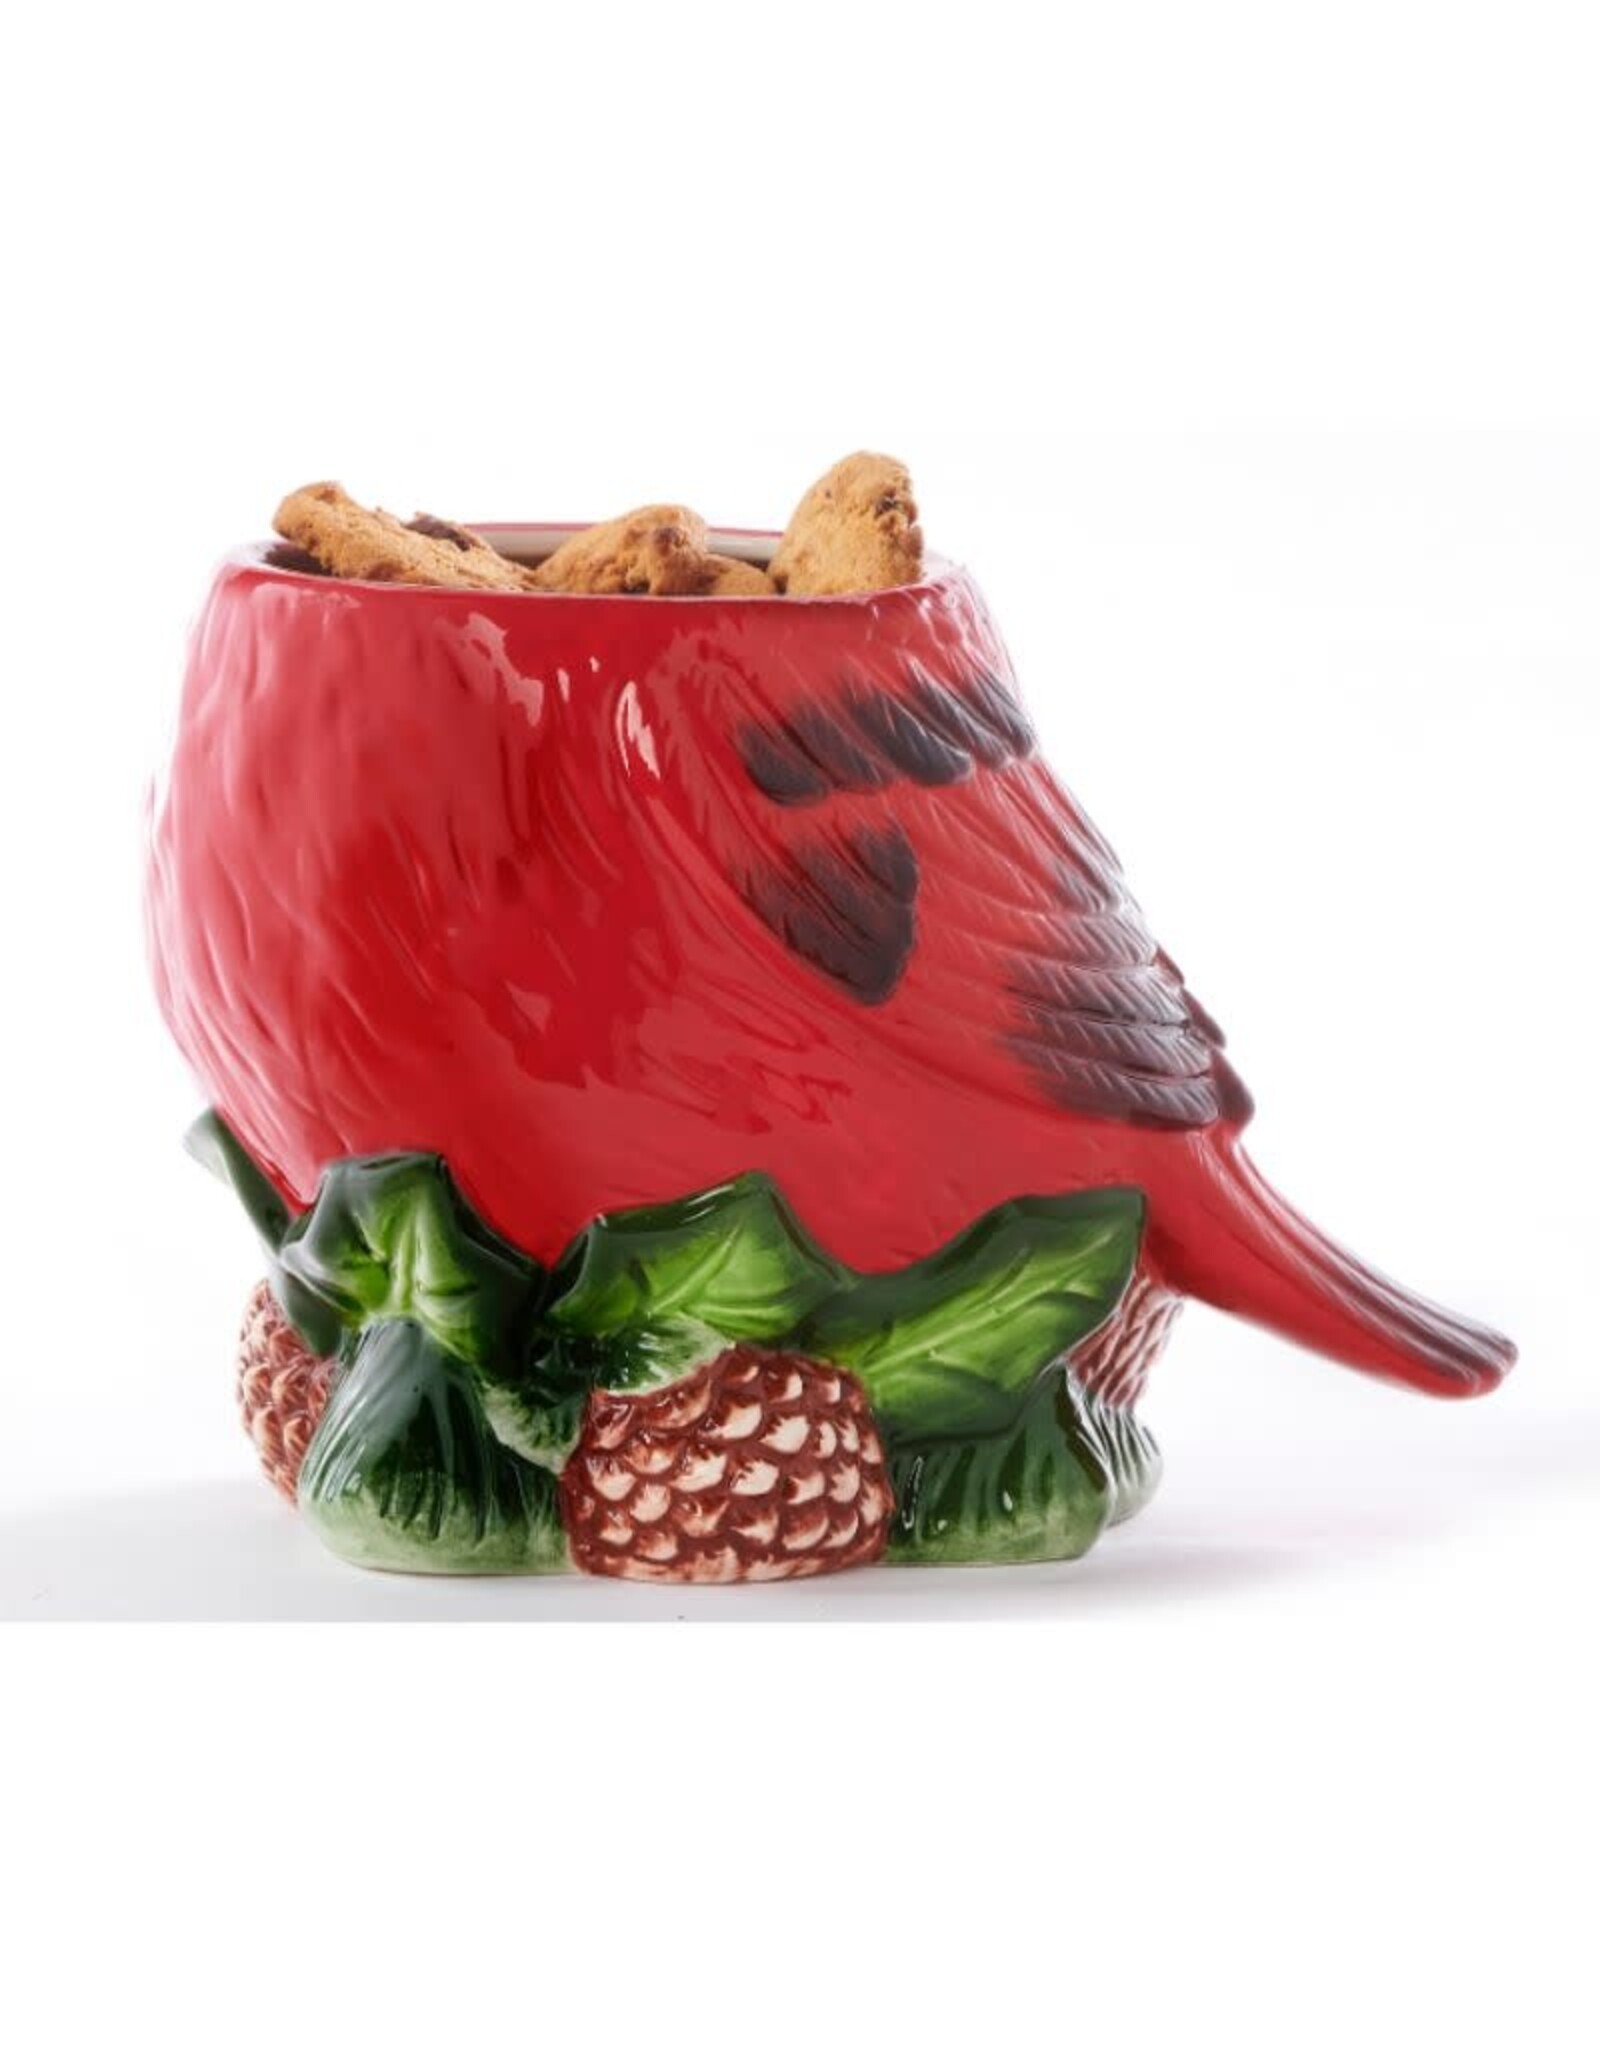 GiftCraft GC665325 Ceramic Cardinal Cookie Jar